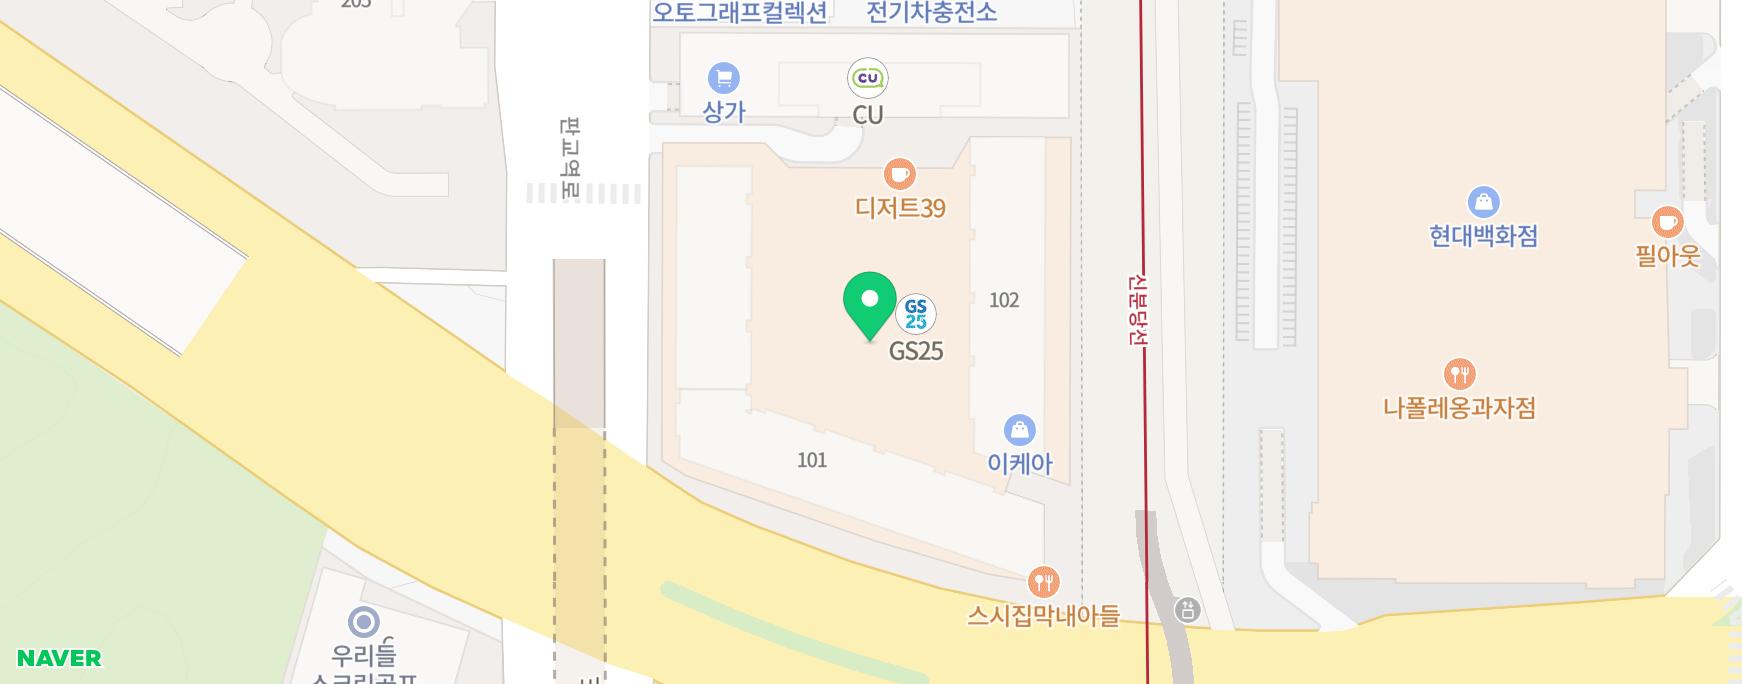 성남 판교 골프연습장 골프레슨 GDR아카데미 무료시타 및 오픈소식!